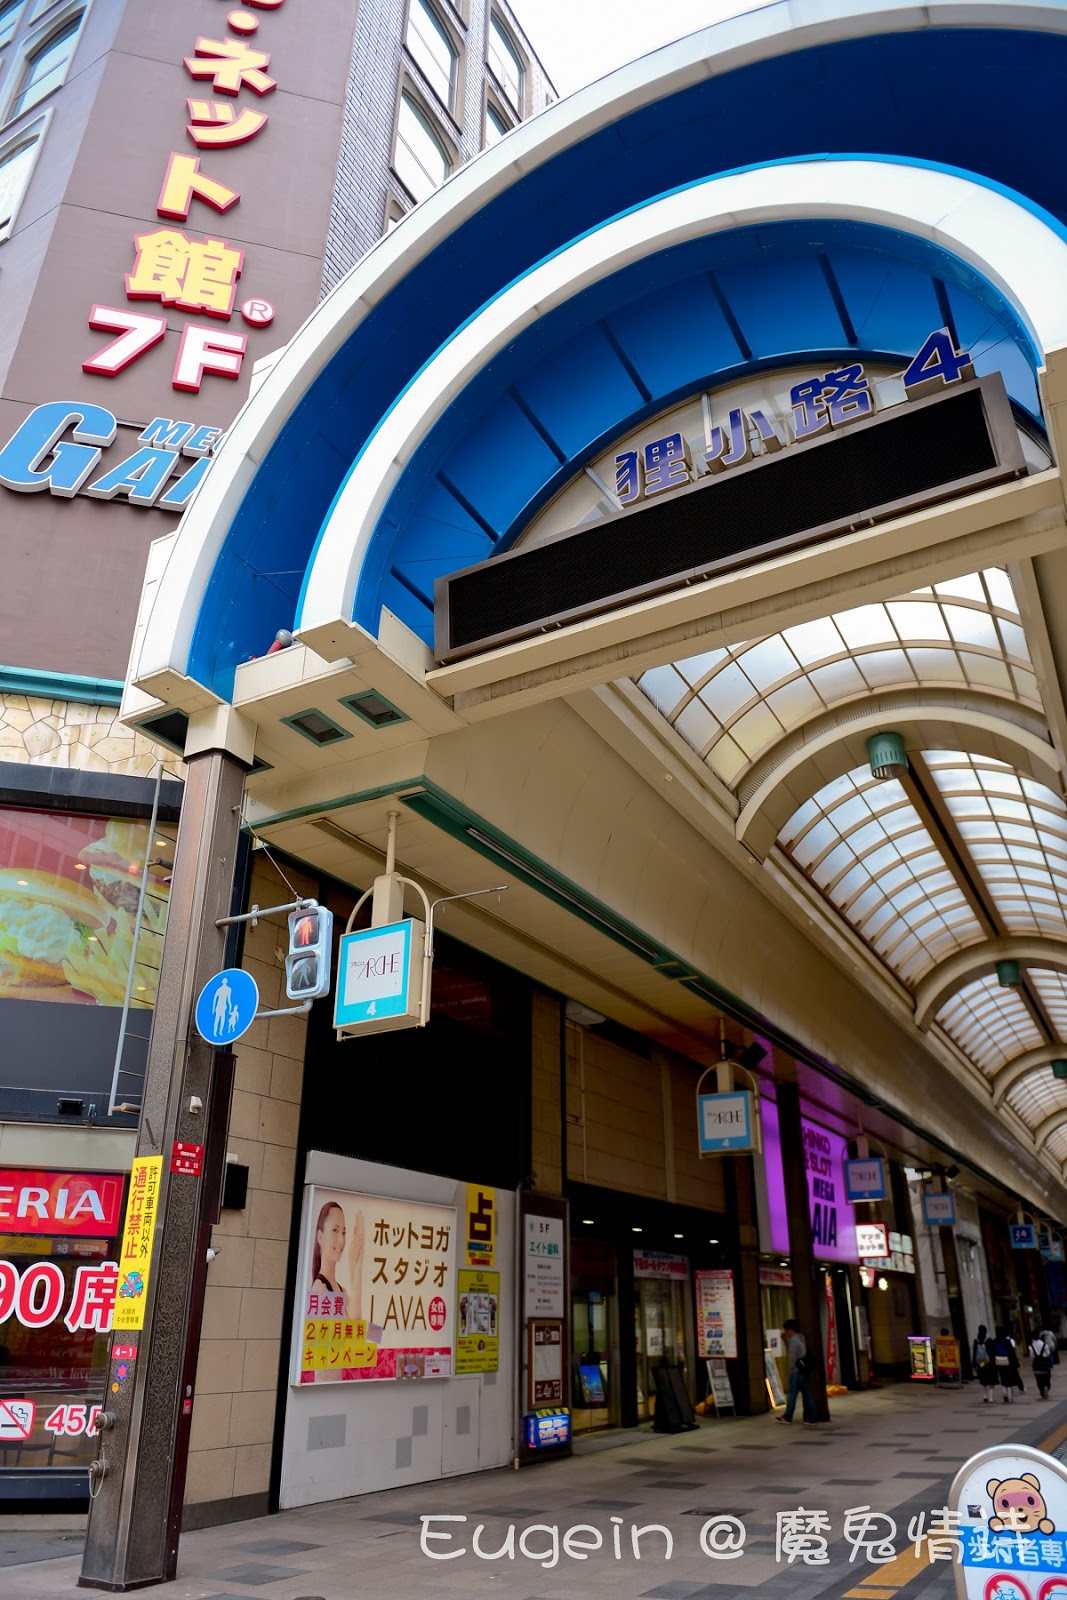 魔鬼情诗: 【北海道札幌住宿】Nest Hotel Sapporo / 札幌二条市场